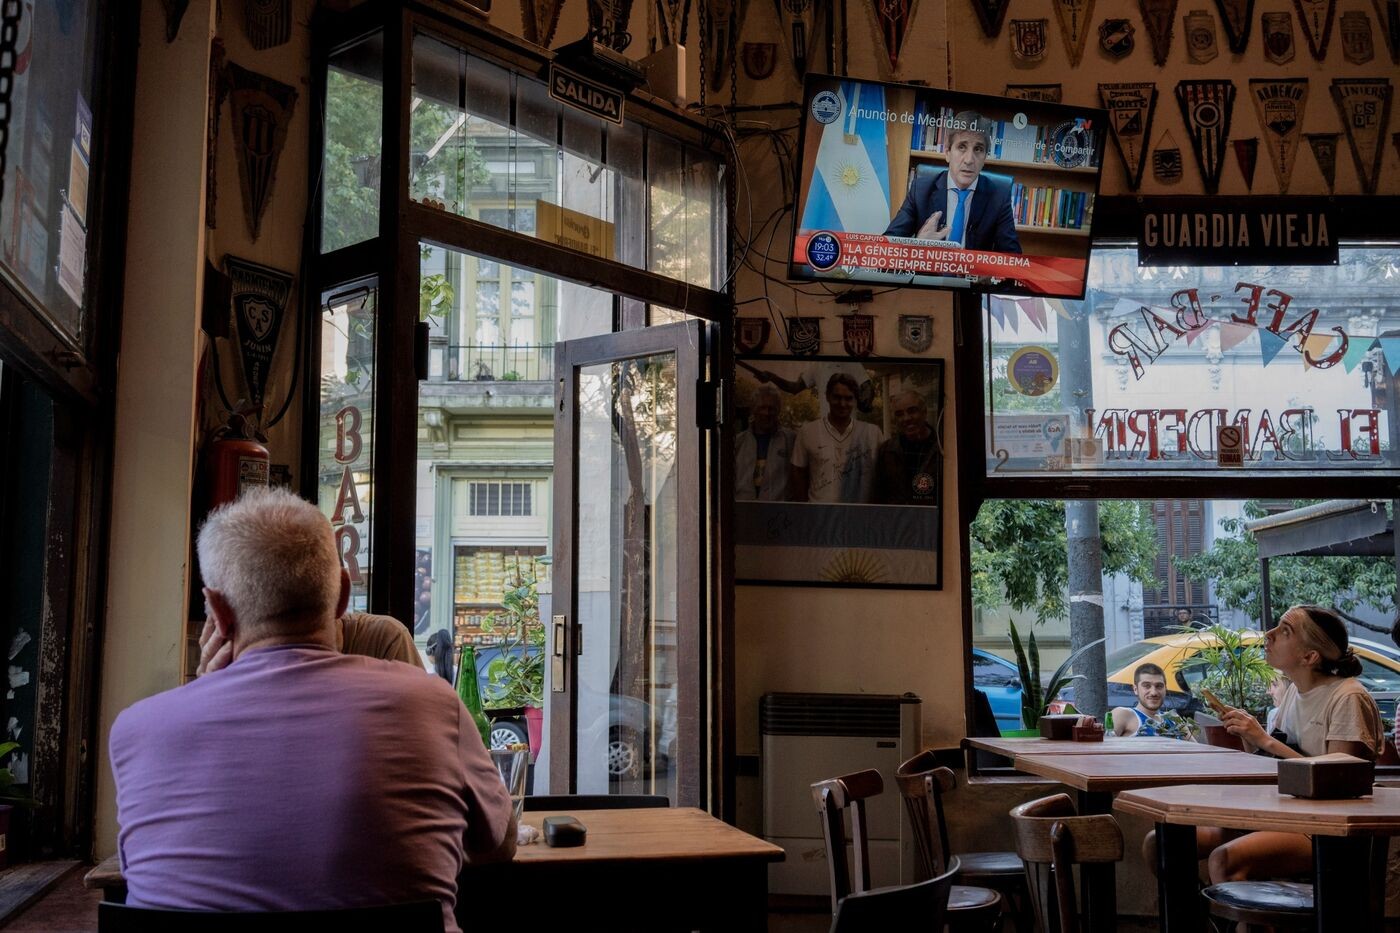 Khách hàng xem tivi trong bài phát biểu của Luis Caputo, tại một quán bar ở Buenos Aires, vào ngày 12 tháng 12.Nhiếp ảnh gia: Anita Pouchard Serra/Bloomberg